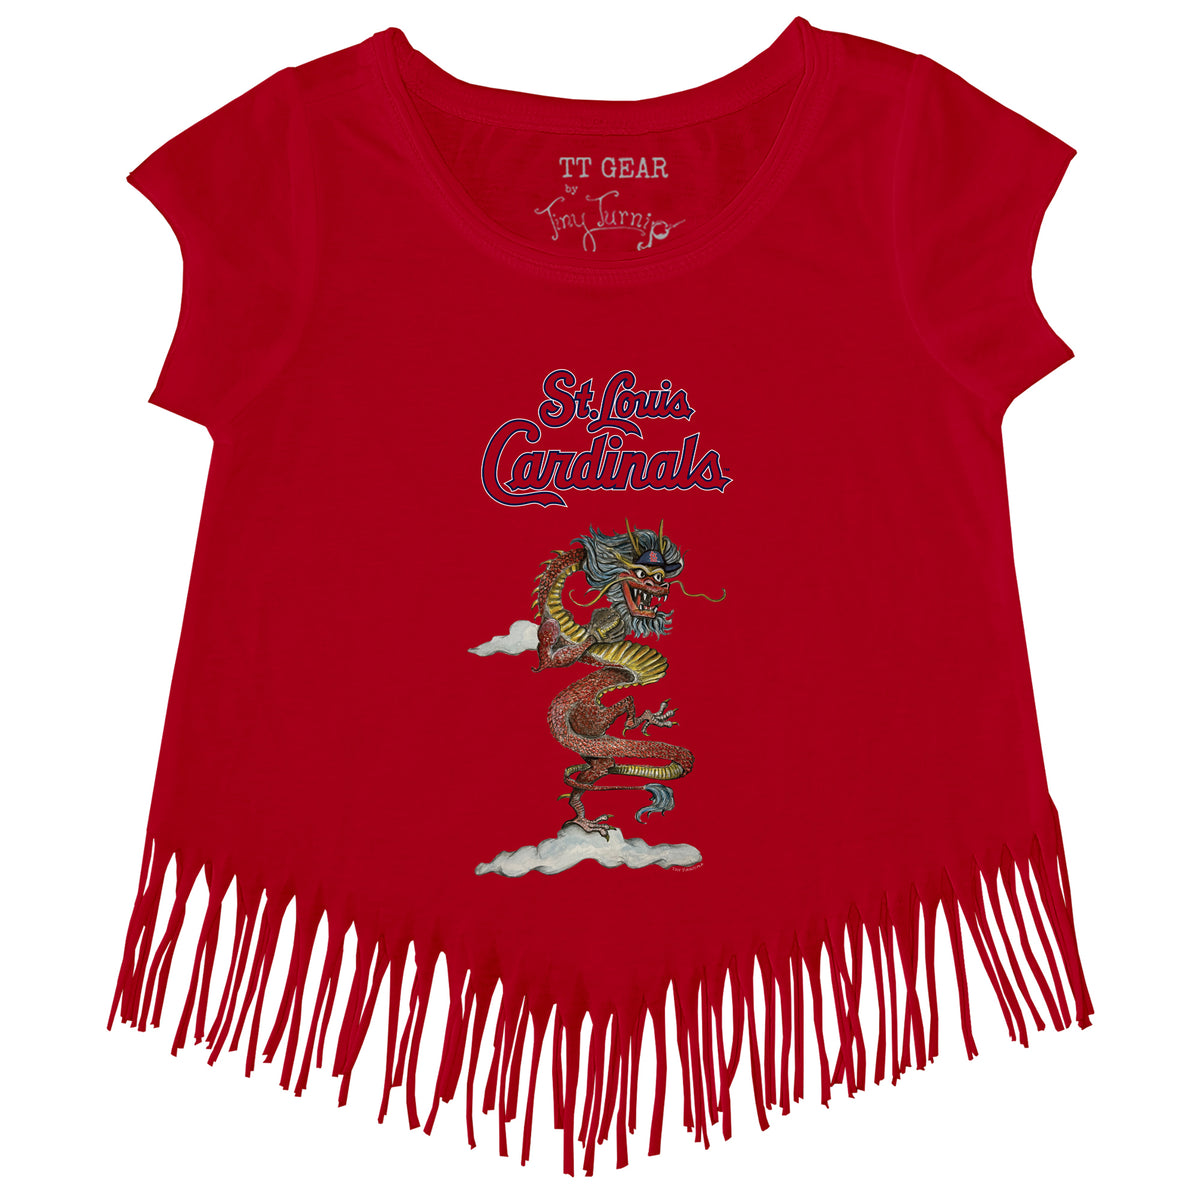 Lids St. Louis Cardinals Tiny Turnip Toddler Teddy Boy T-Shirt